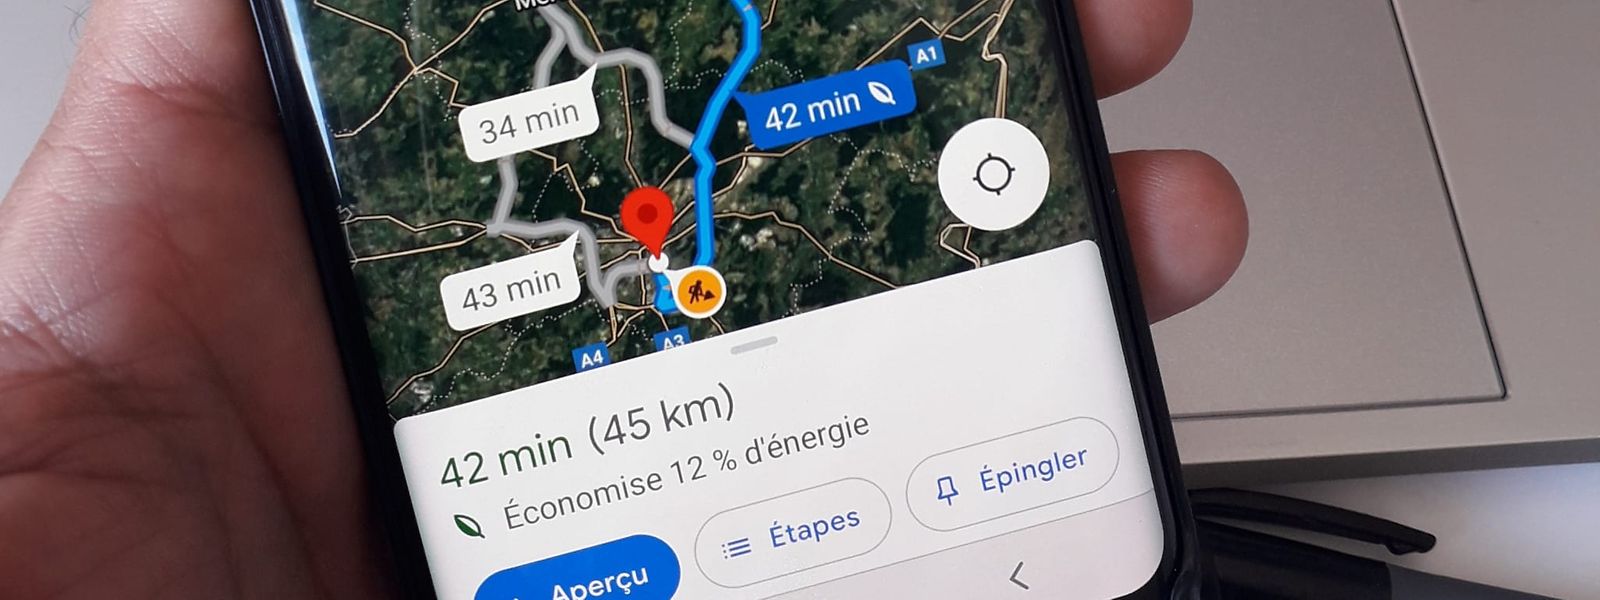 Désormais, Google Maps propose un itinéraire dit "économique", en indiquant le gain énergétique réalisé selon la motorisation du véhicule.